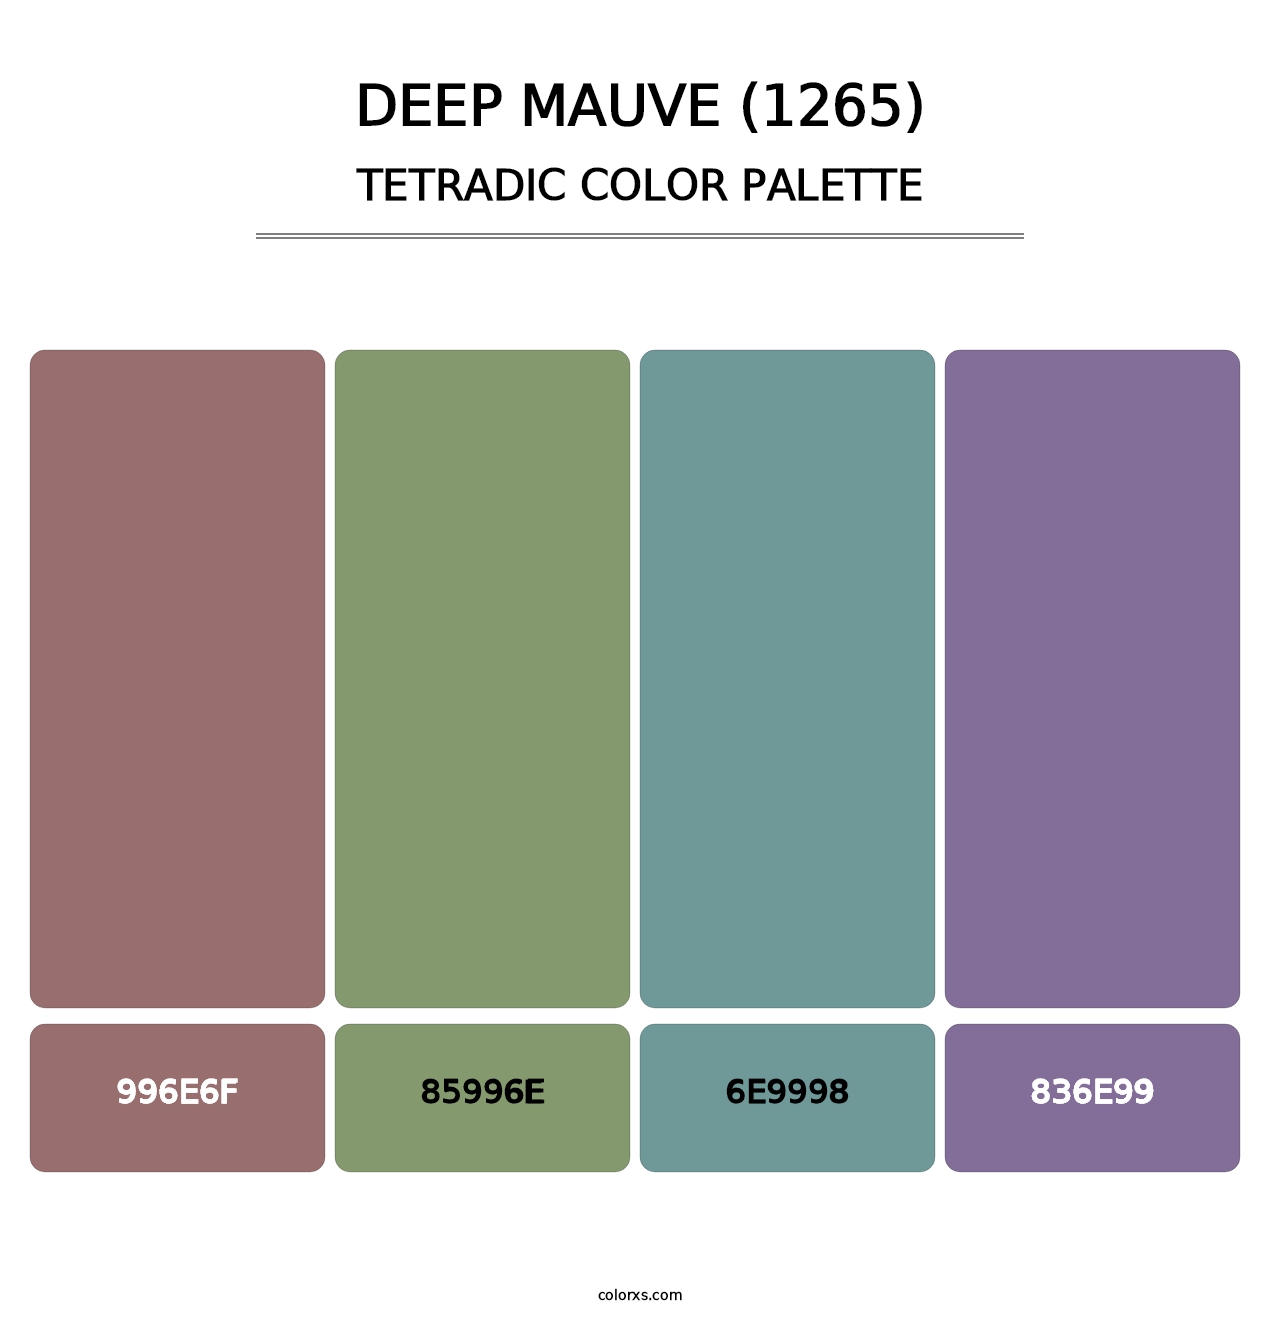 Deep Mauve (1265) - Tetradic Color Palette